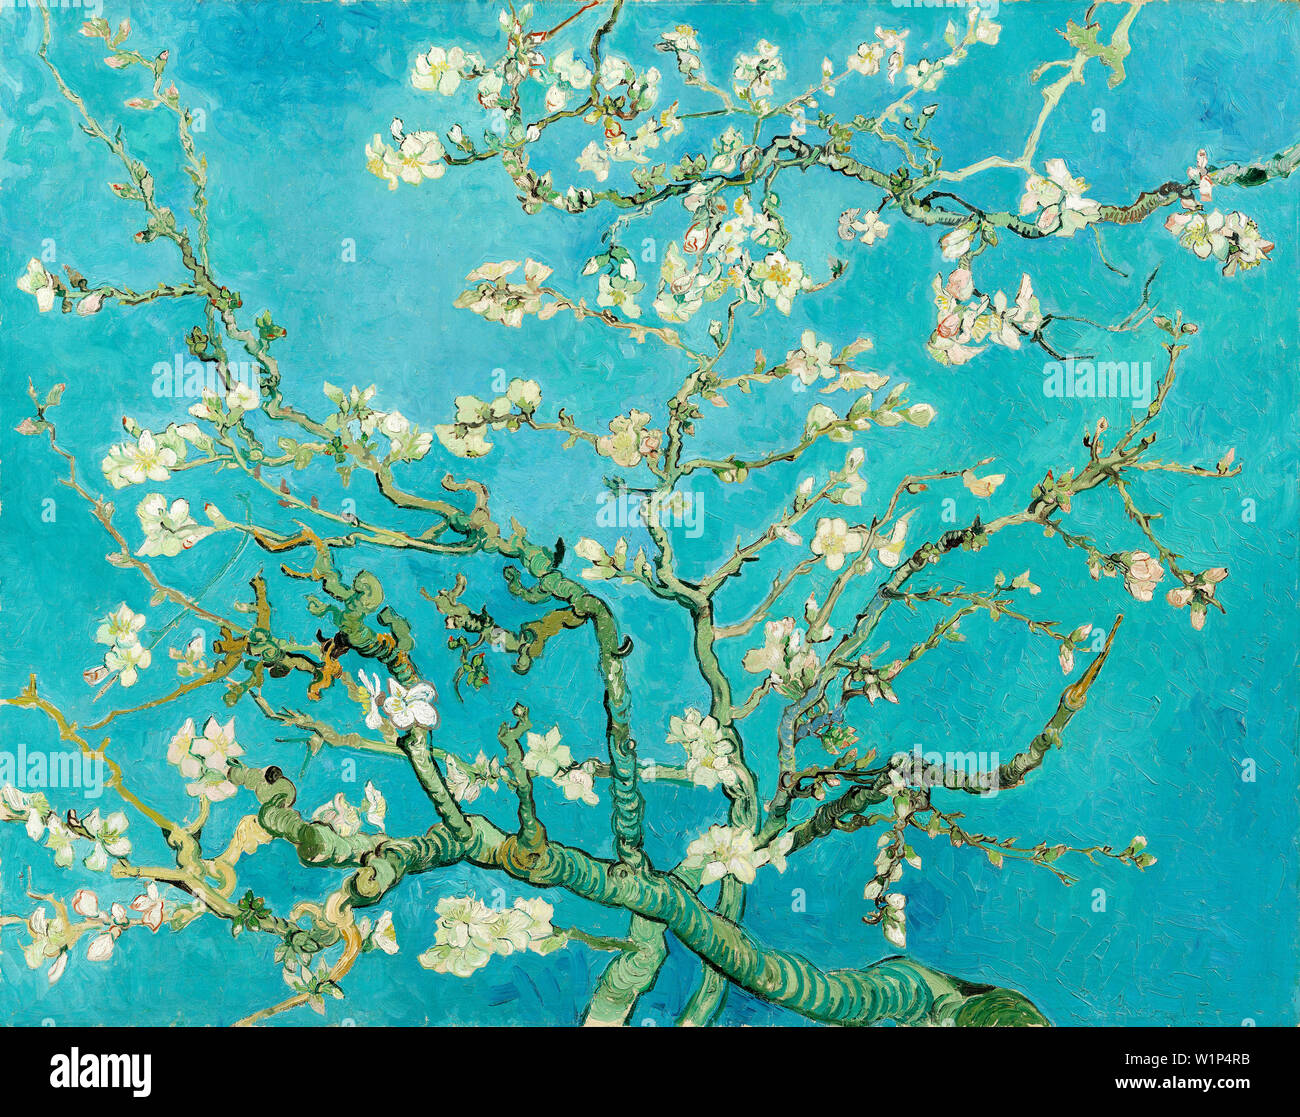 Vincent Van Gogh, Almond Blossom, peinture post-impressionniste, 1890 Banque D'Images